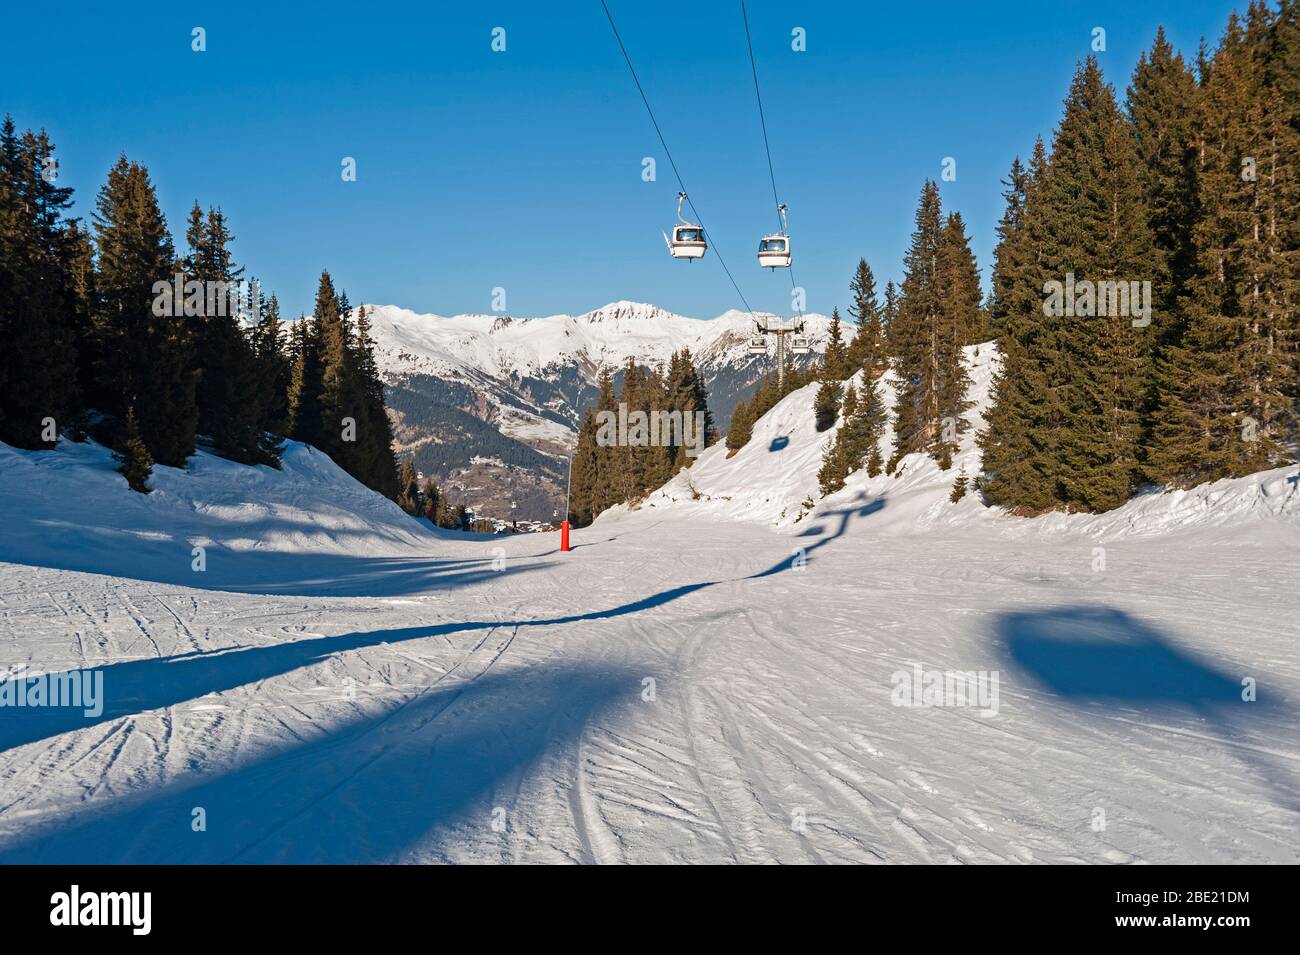 Blick auf eine alpine Skipiste Piste mit Seilbahn Lift auf Bergseite Stockfoto